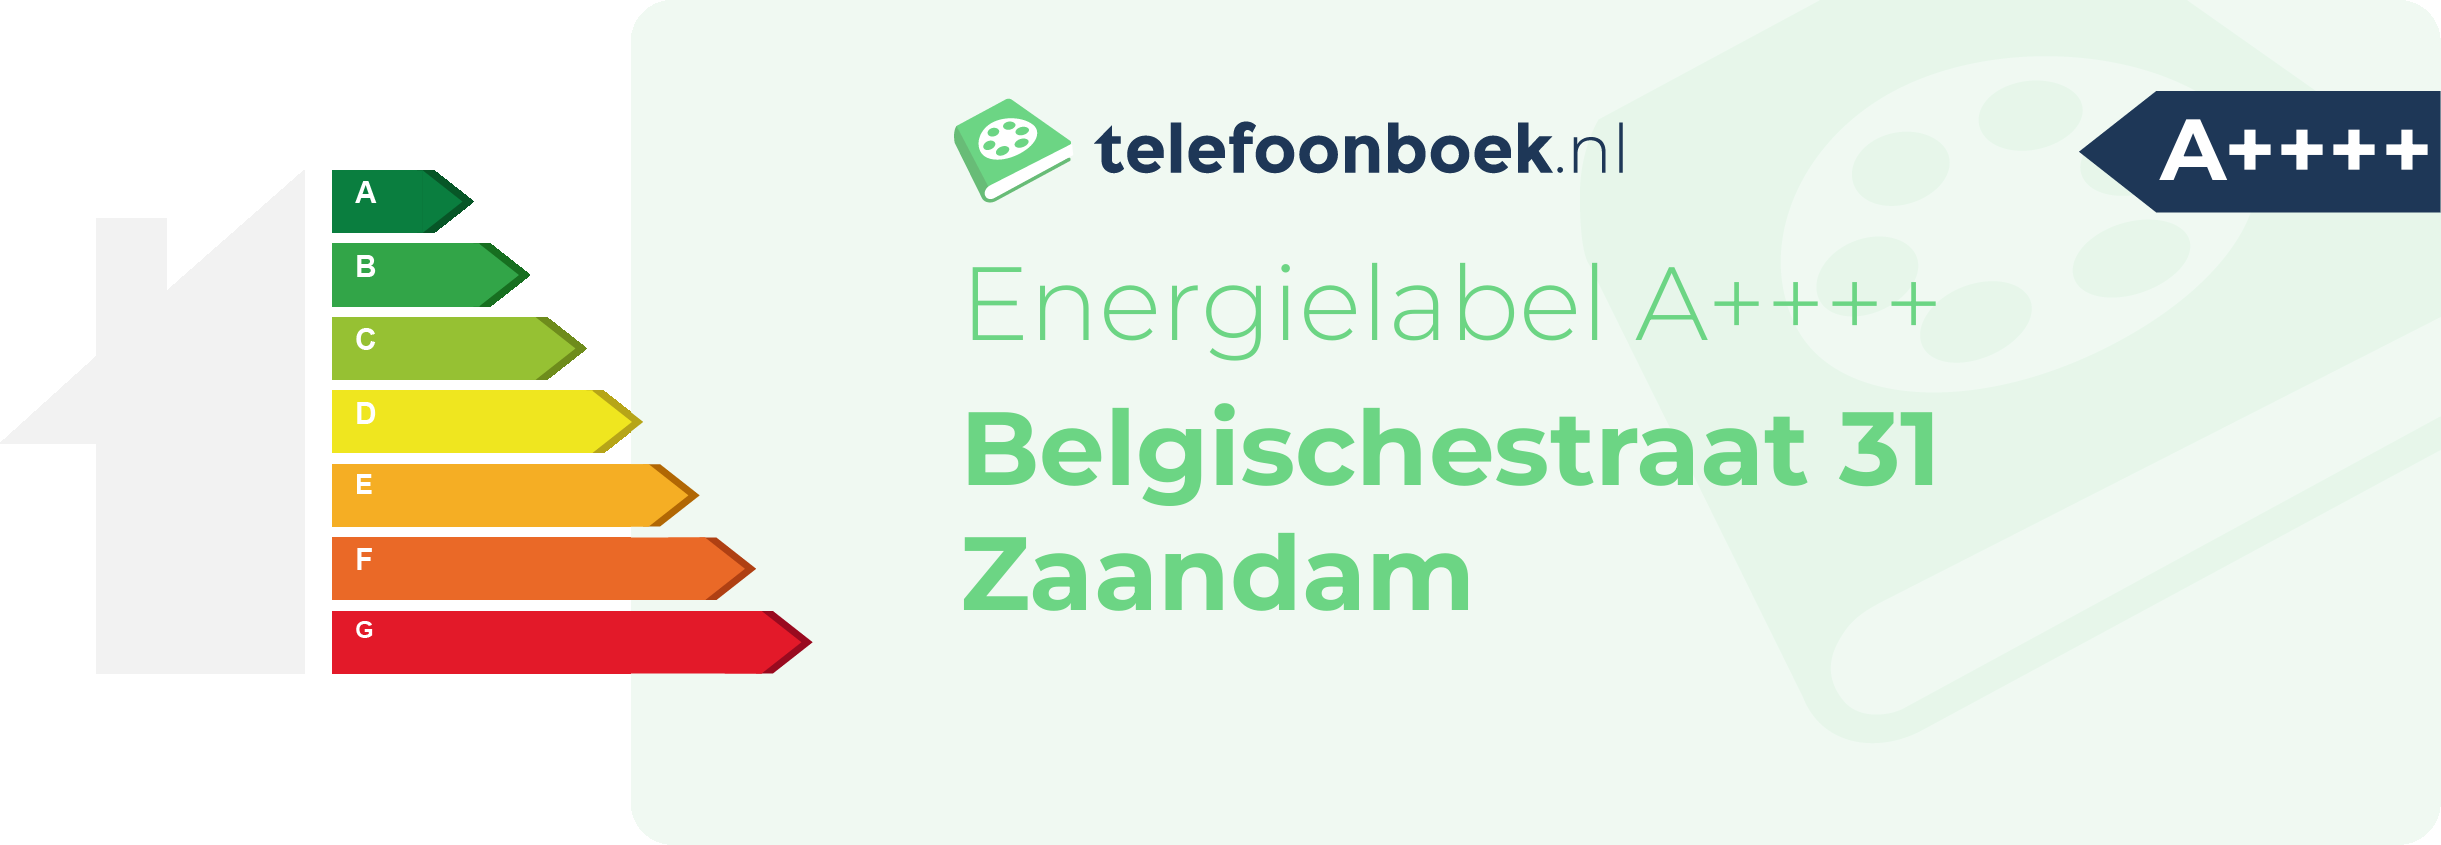 Energielabel Belgischestraat 31 Zaandam